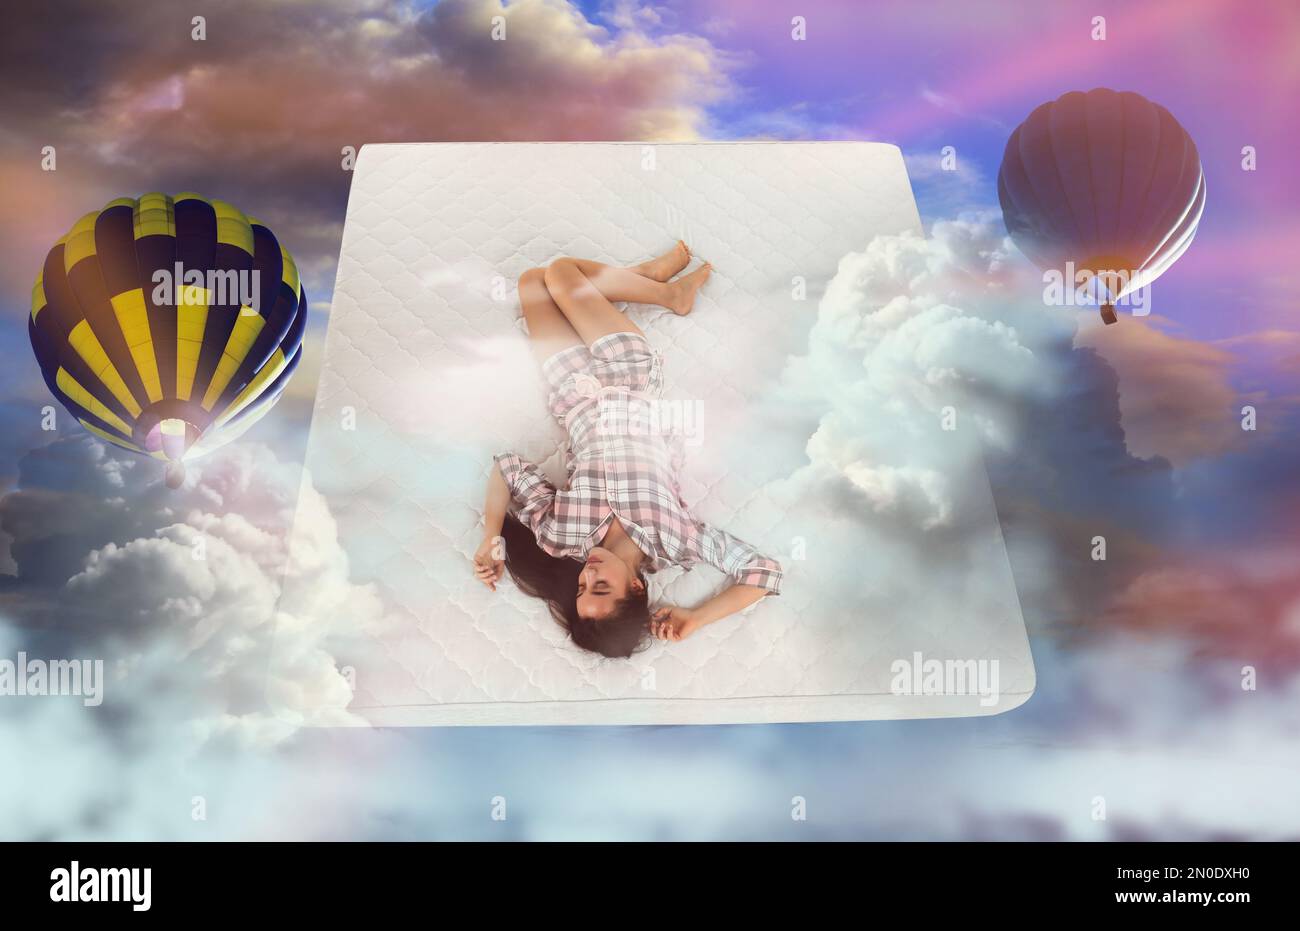 Dulces sueños. Cielo nublado brillante con globos de aire caliente alrededor de la mujer joven durmiente Foto de stock